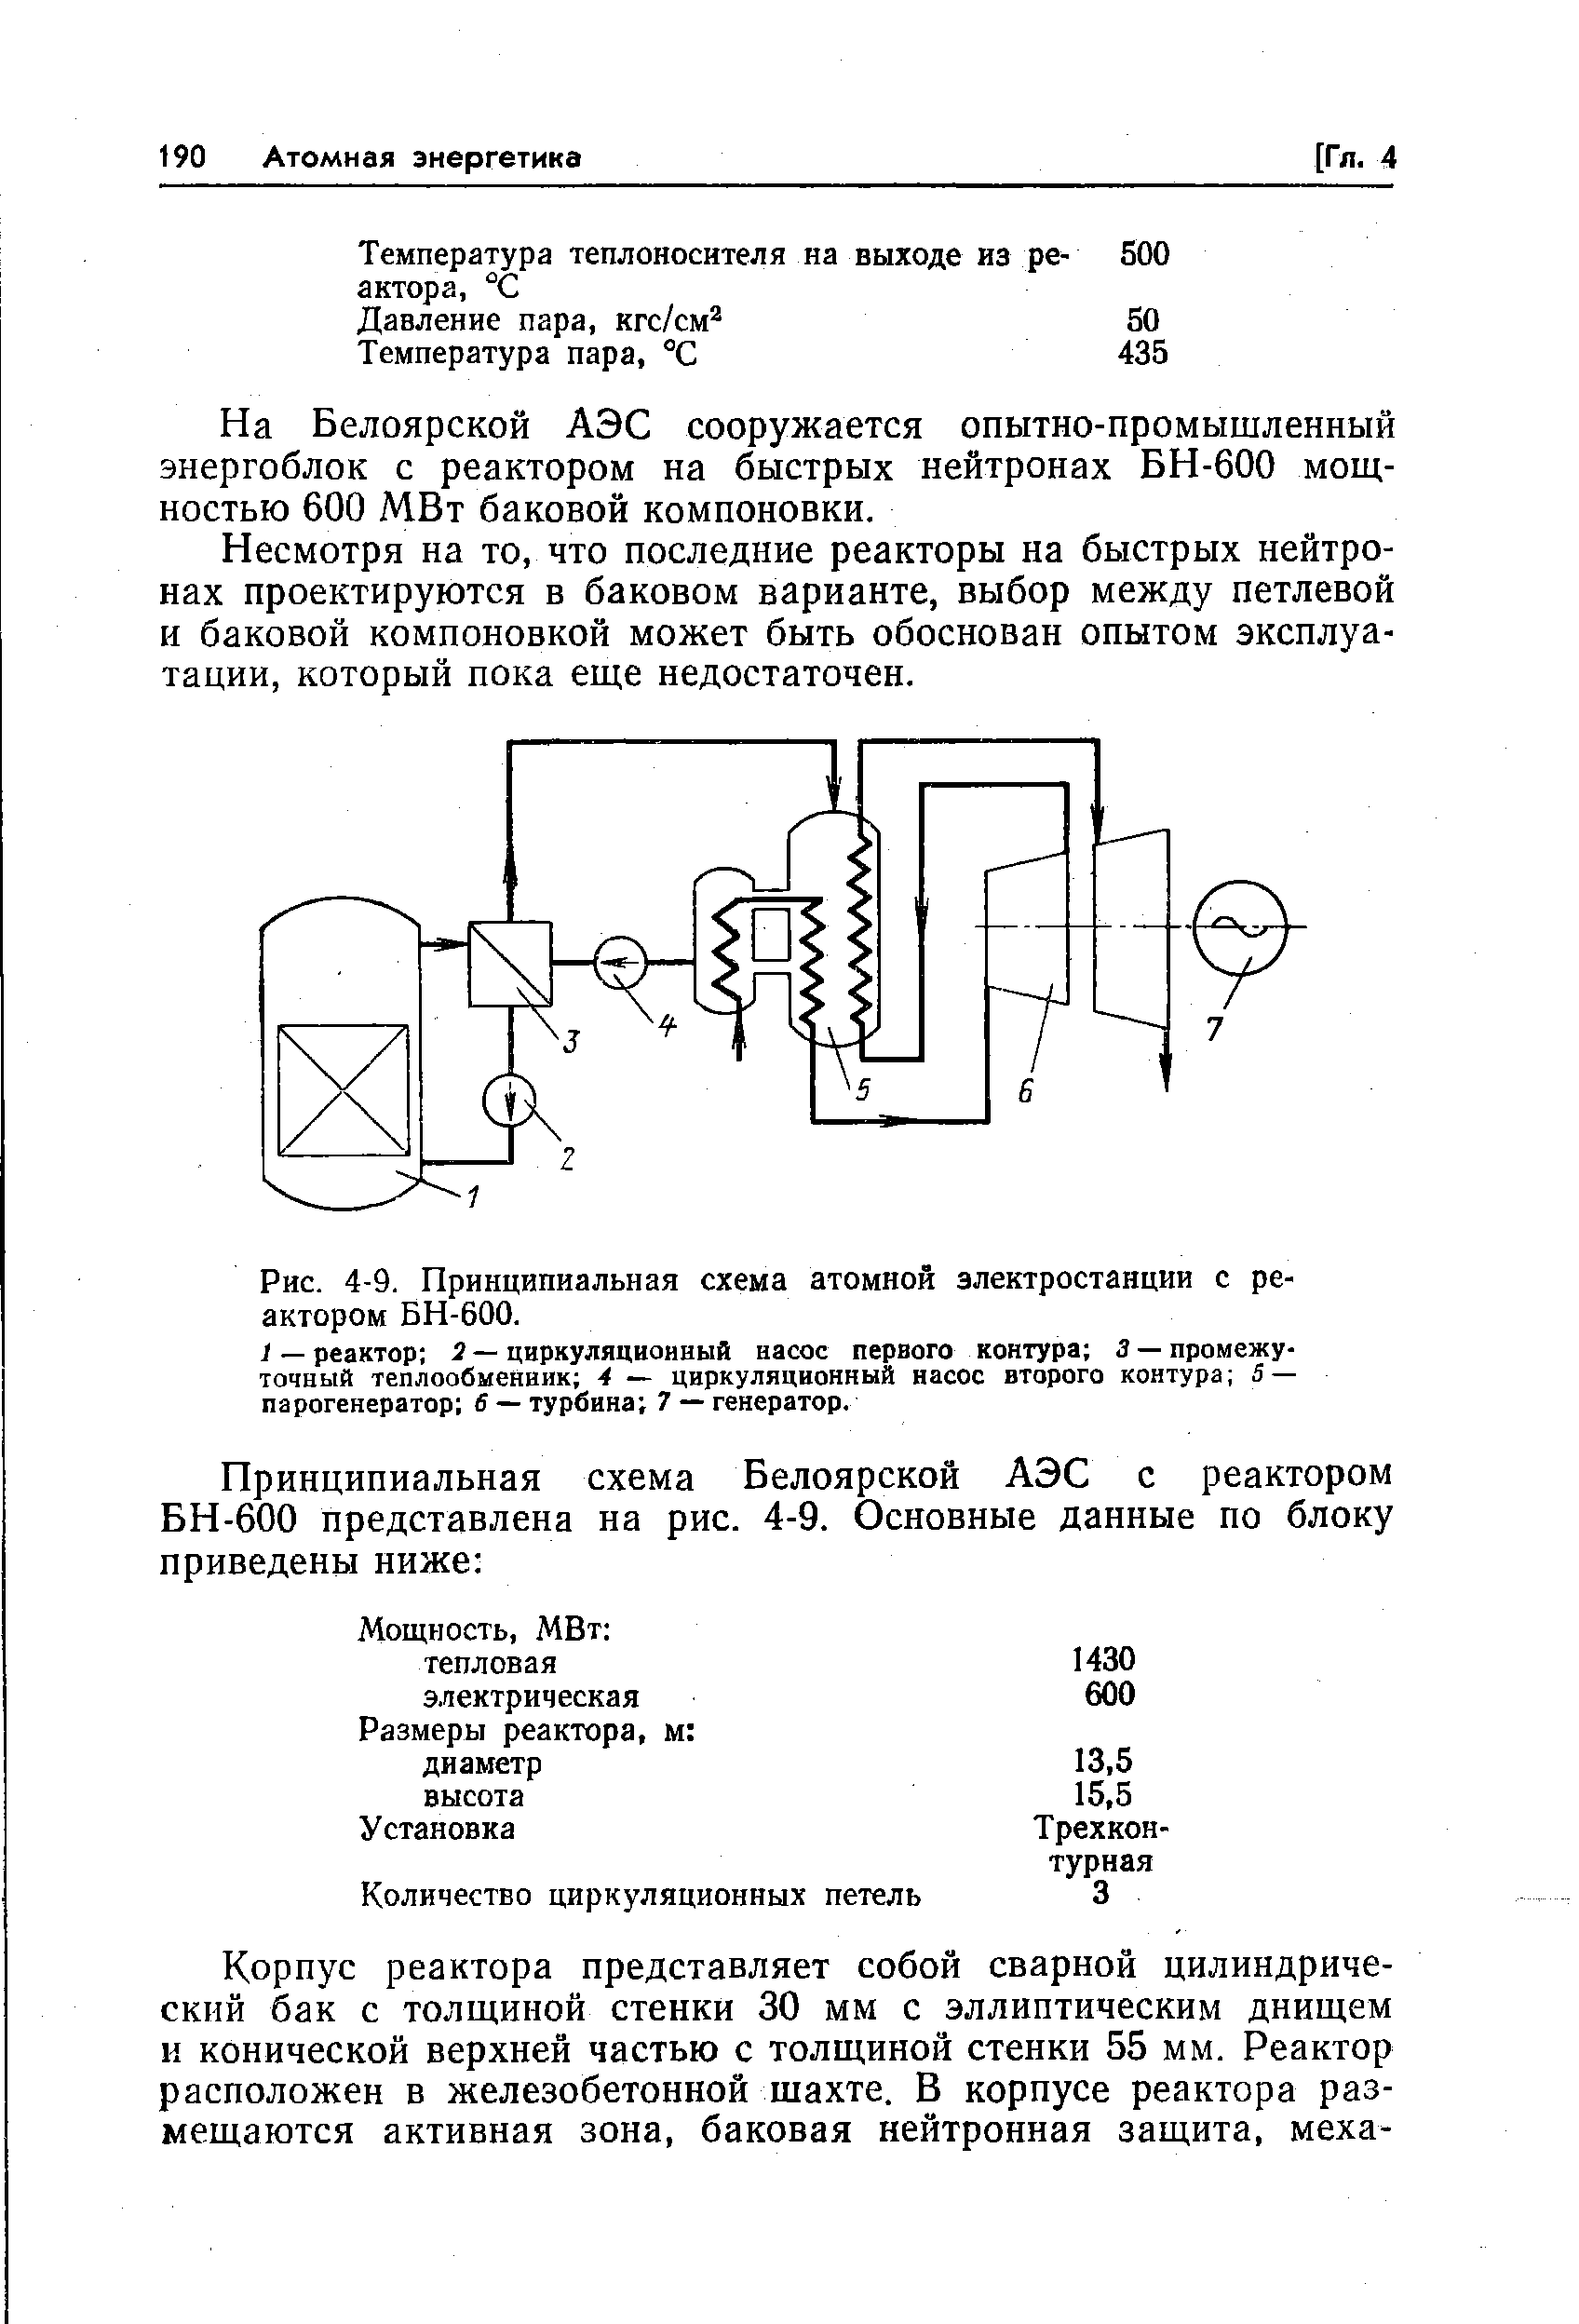 Рис. 4-9. Принципиальная схема атомной электростанции с реактором БН-600.
